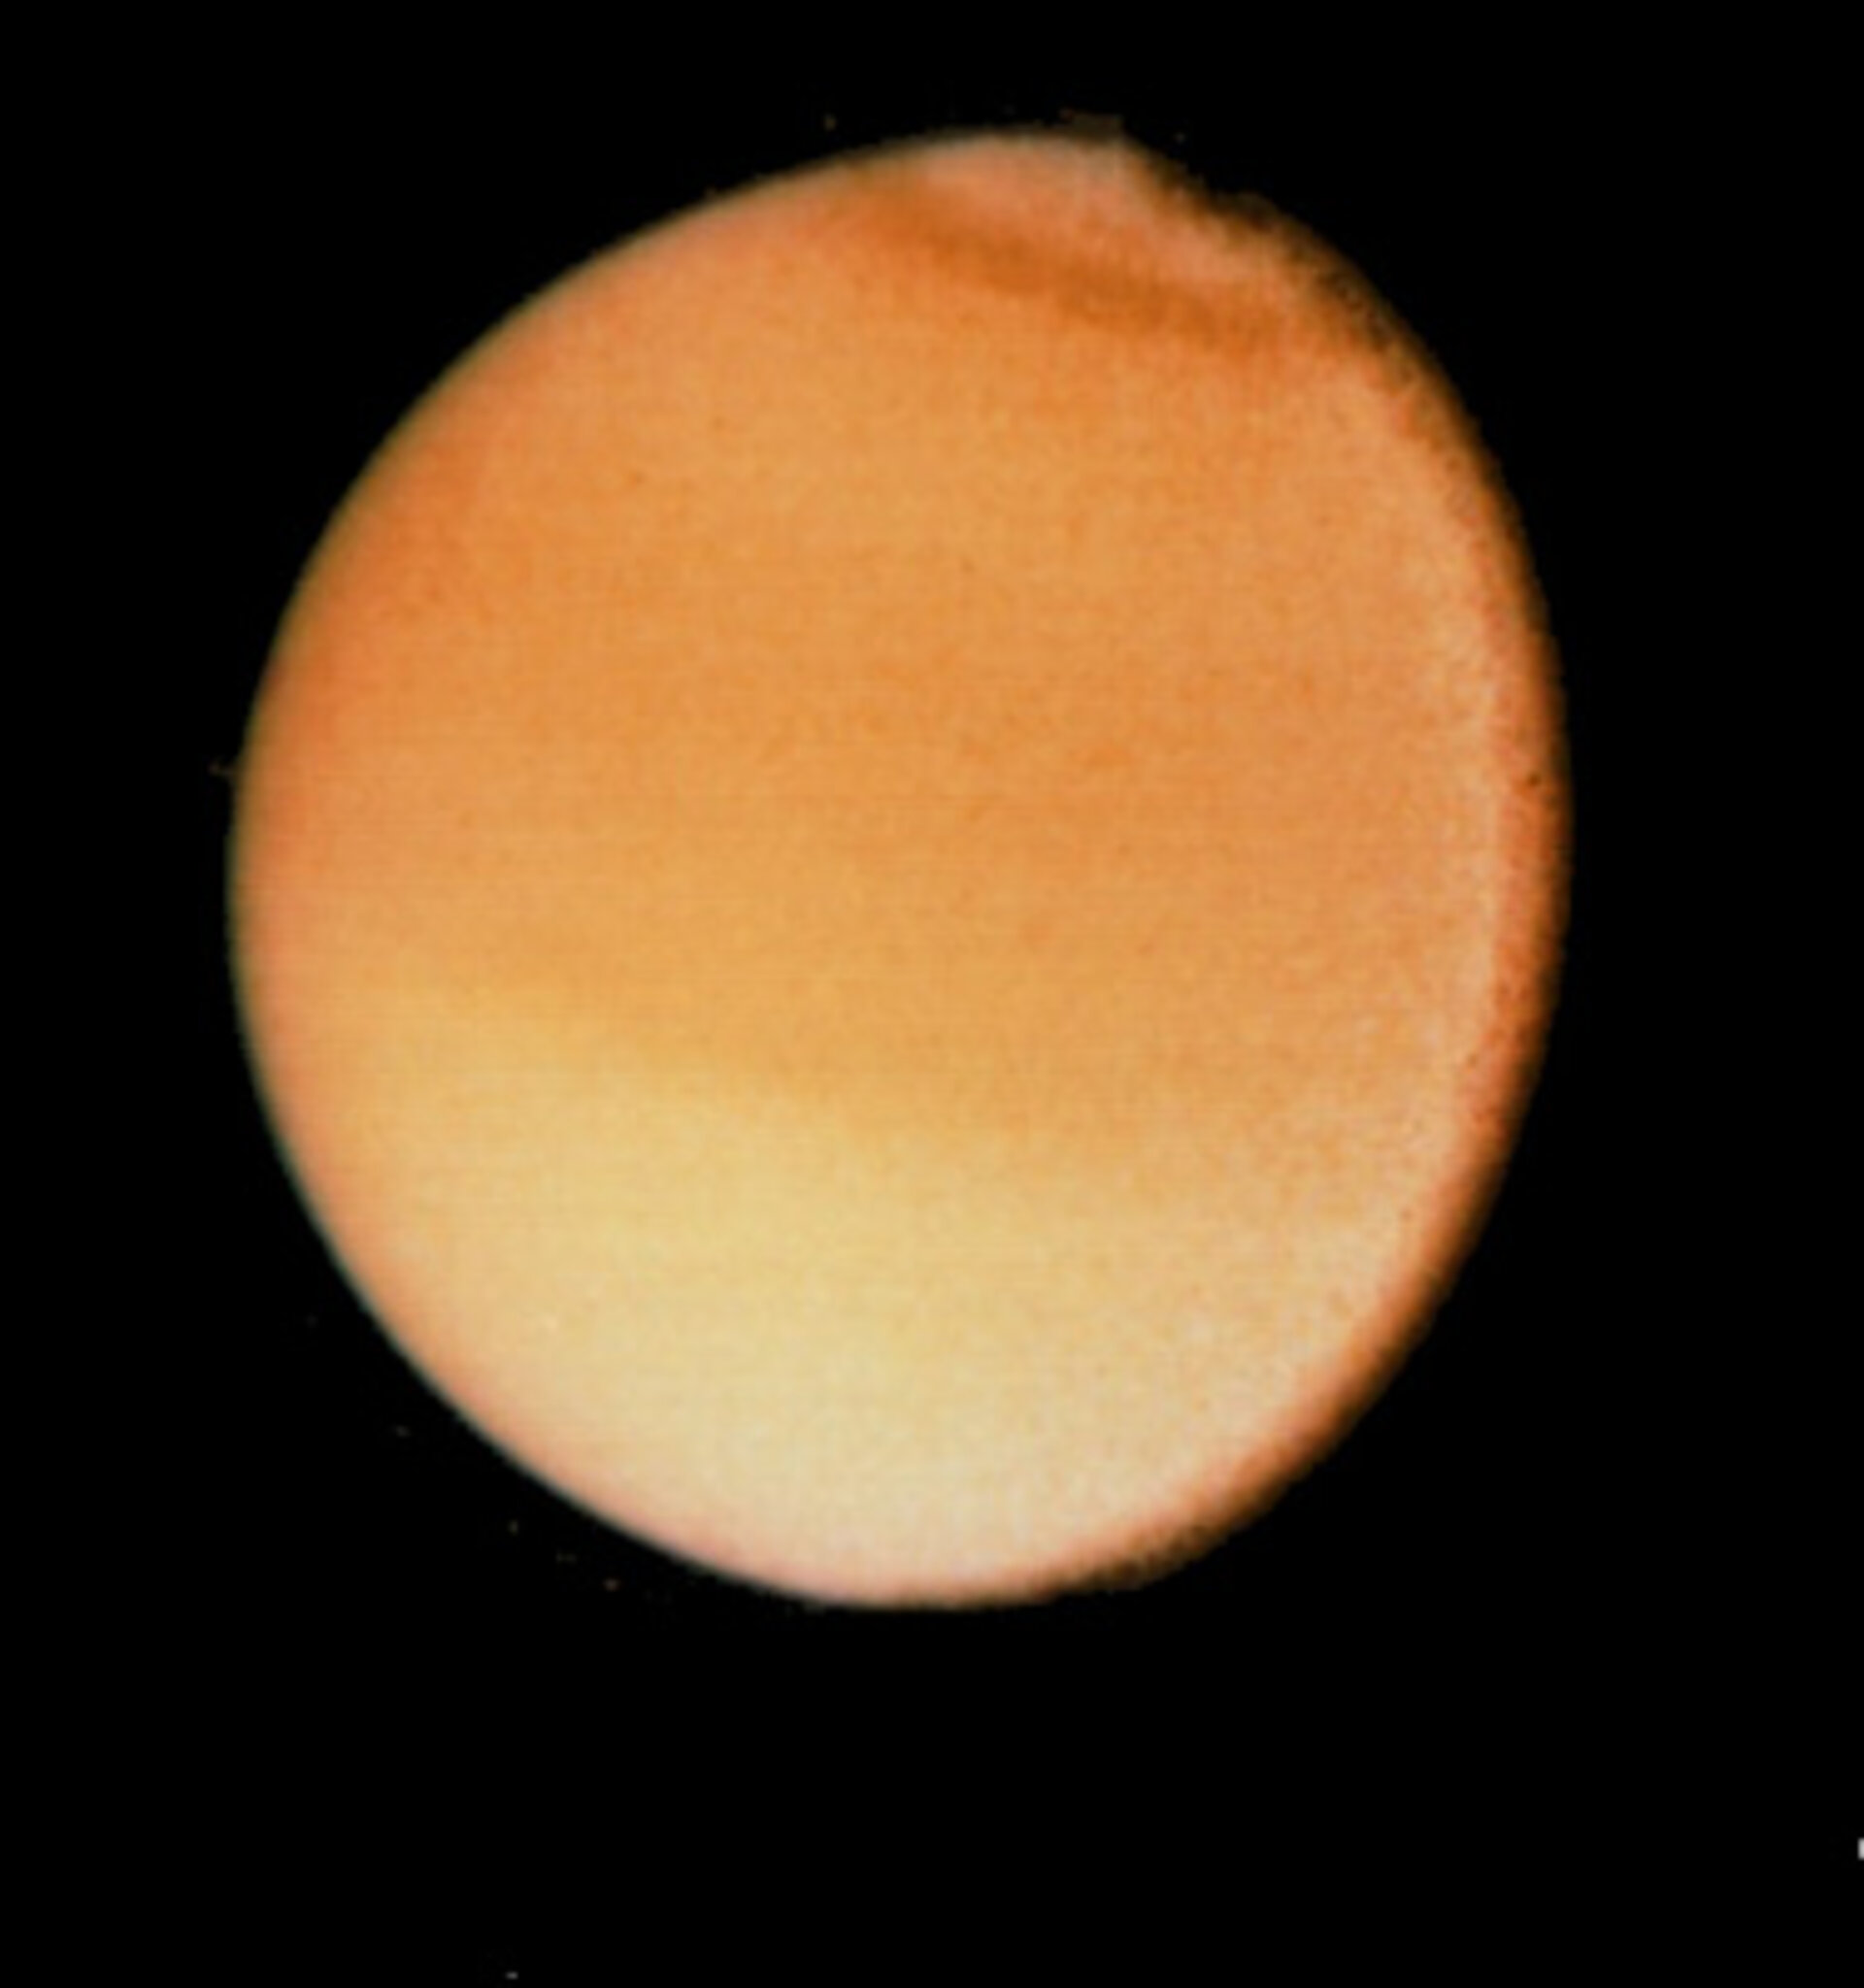 Titan, Saturn's largest moon